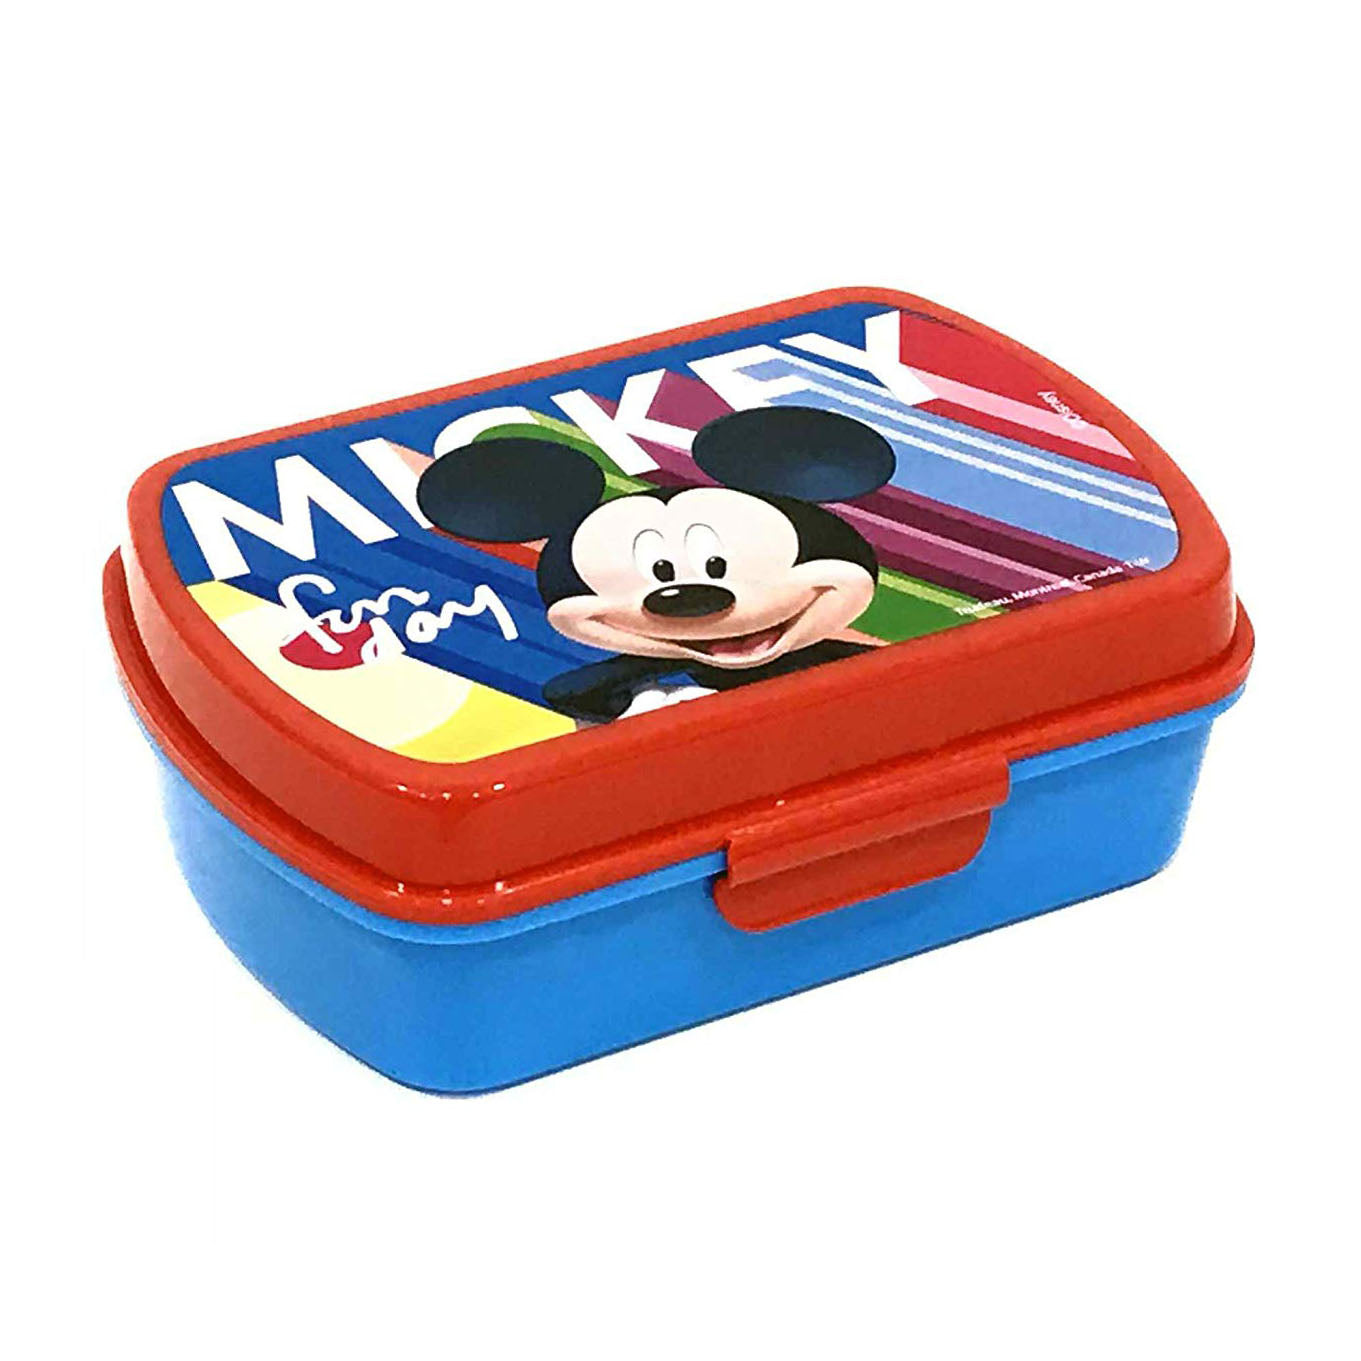 Disney Mickey Mouse box pranzo ufficiale portapranzo Topolino 1100